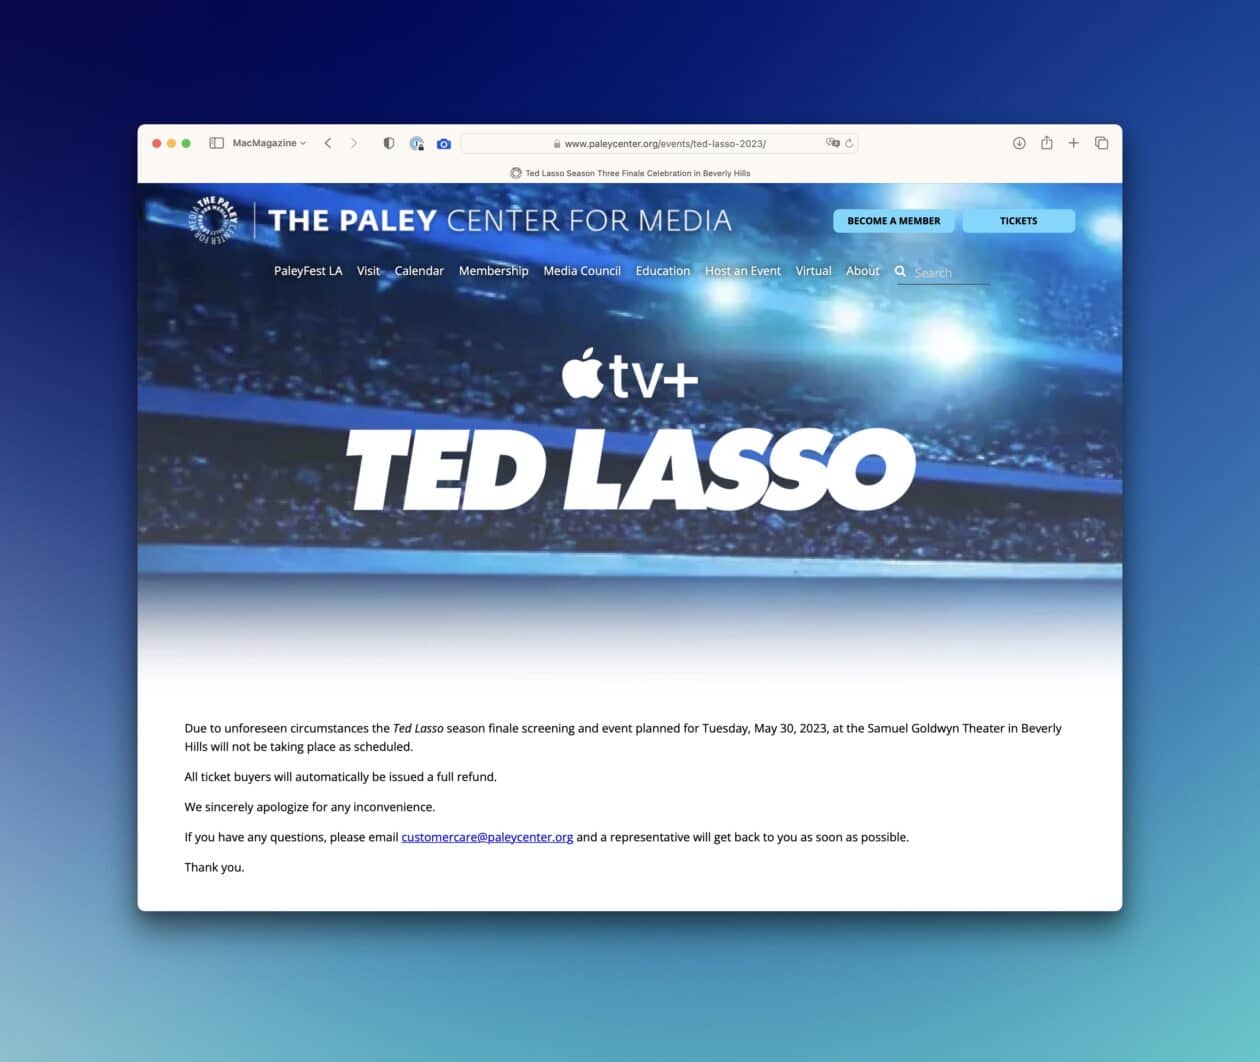 Evento cancelado de "Ted Lasso"